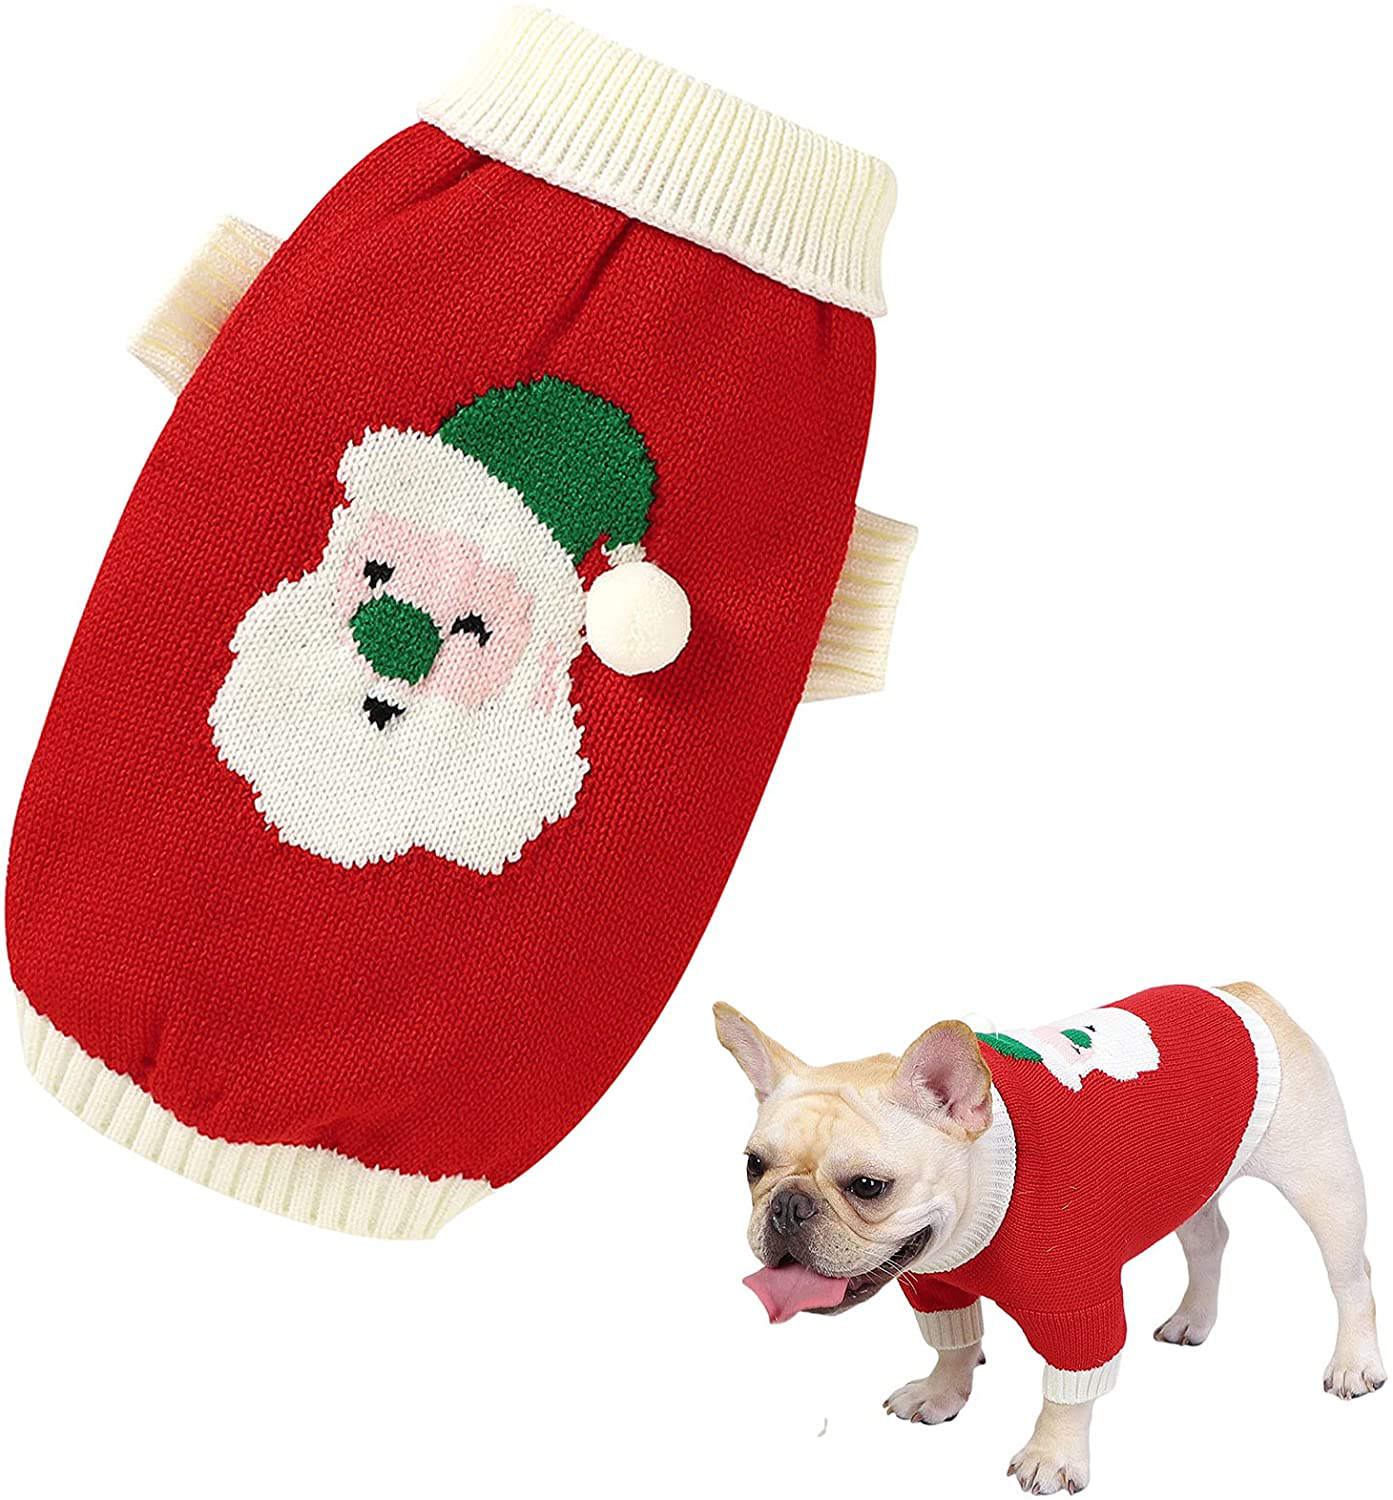 Christmas Dog Sweater Cartoon Reindeer Pet Sweaterssanta Claus Knitten Sweater Xmas Winter Knitwear Warm Clothes Animals & Pet Supplies > Pet Supplies > Dog Supplies > Dog Apparel Banooo Red S 